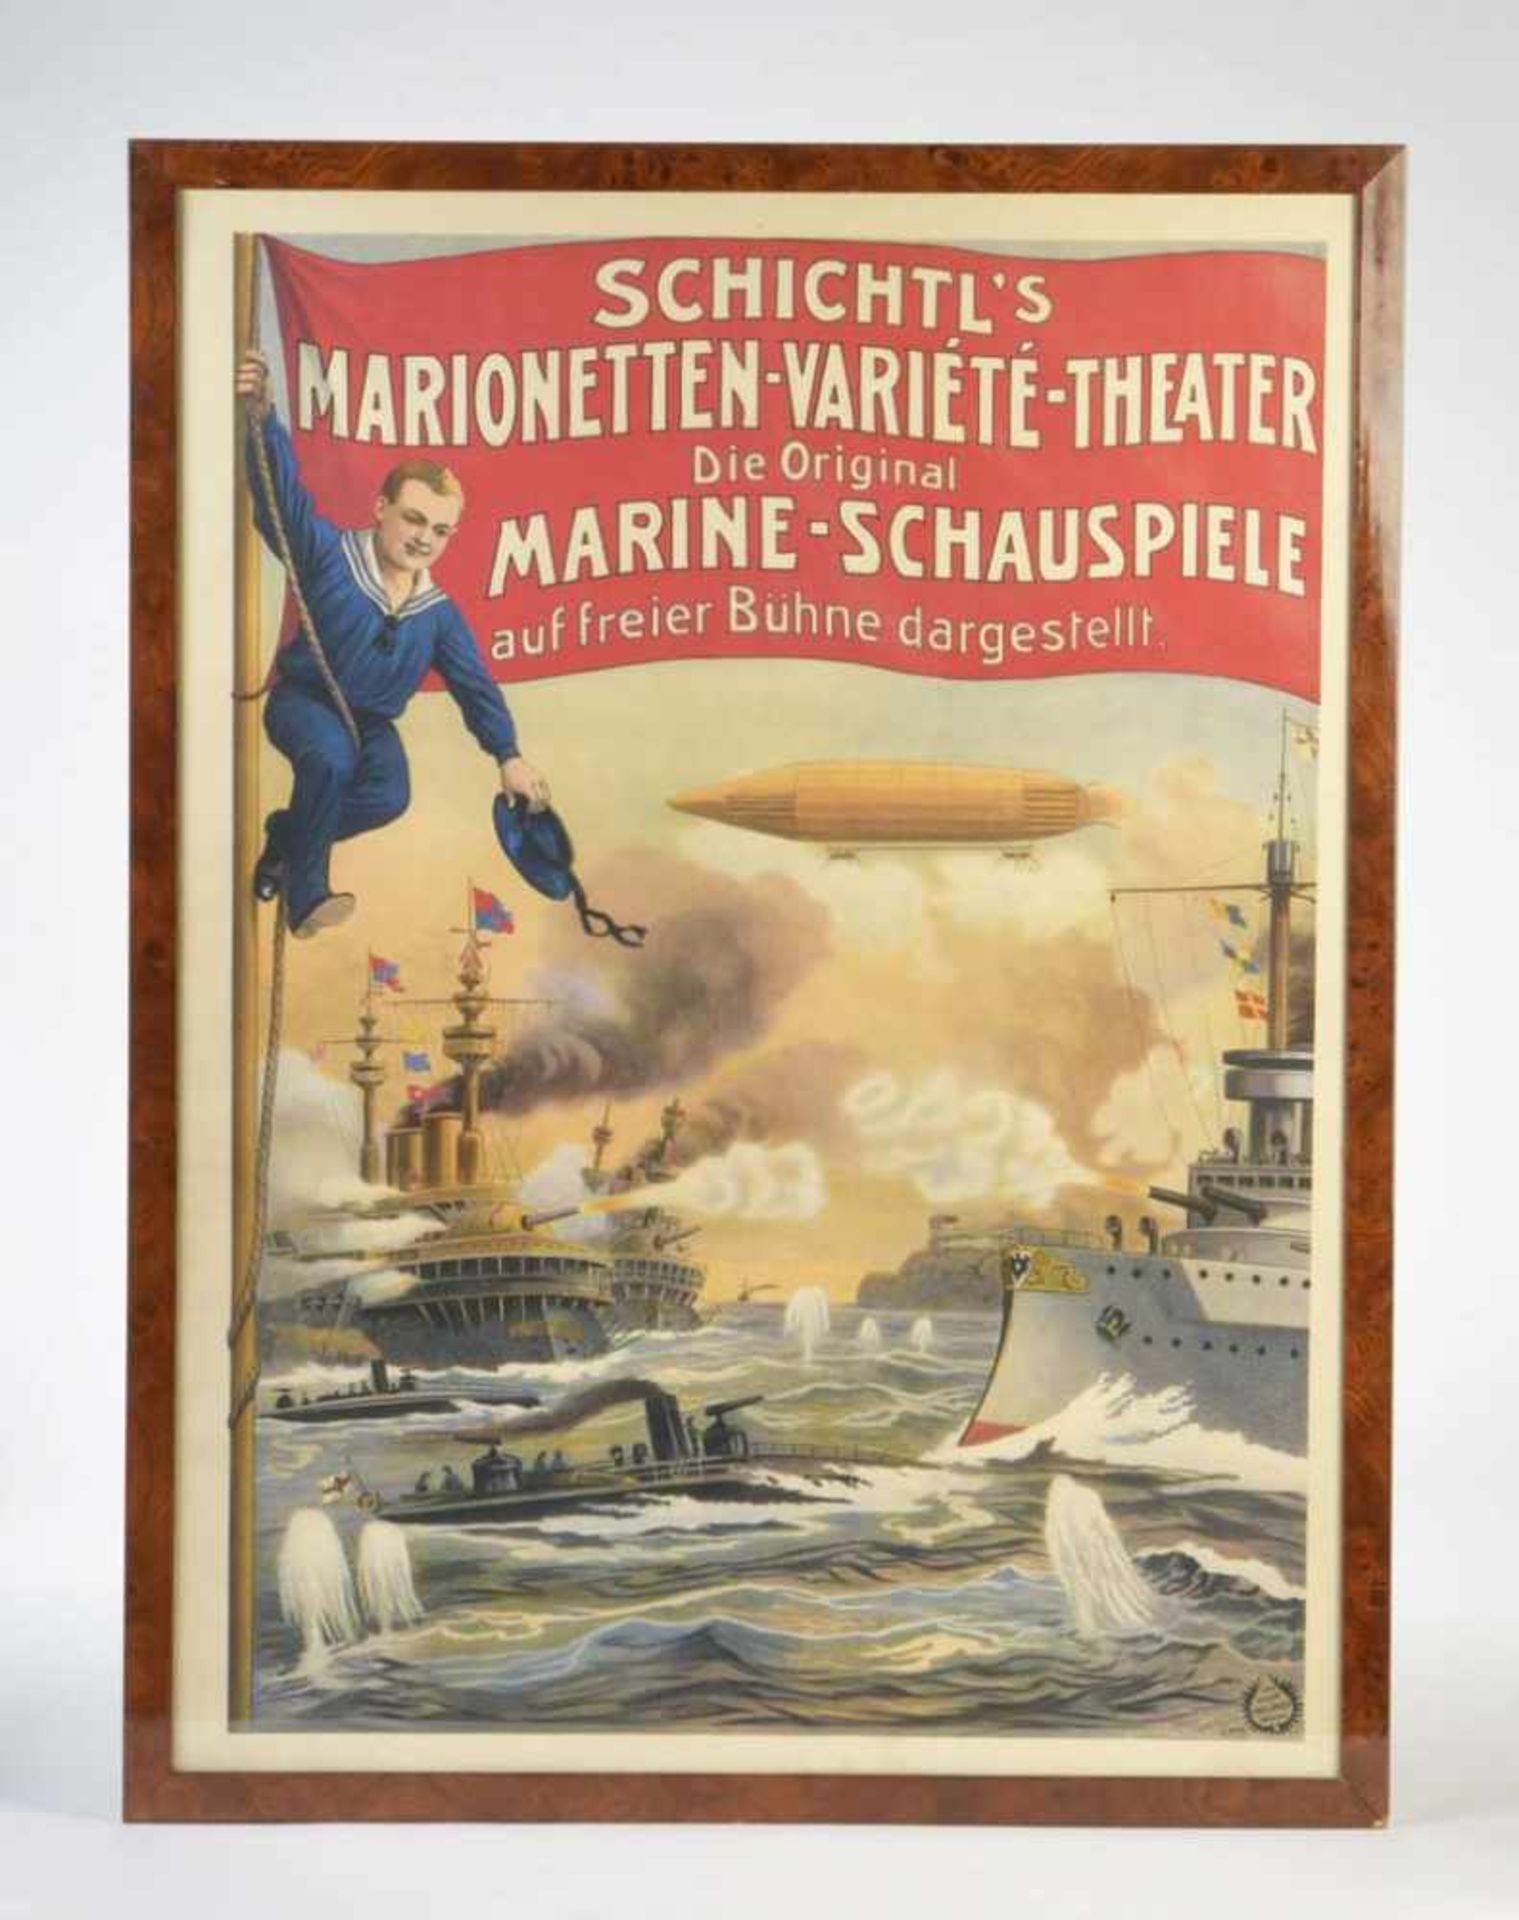 Plakat "Schichtl's Marine-Schauspiele", Germany VK, 71x109 cm, im Holzrahmen, kein Versand, Z 1-